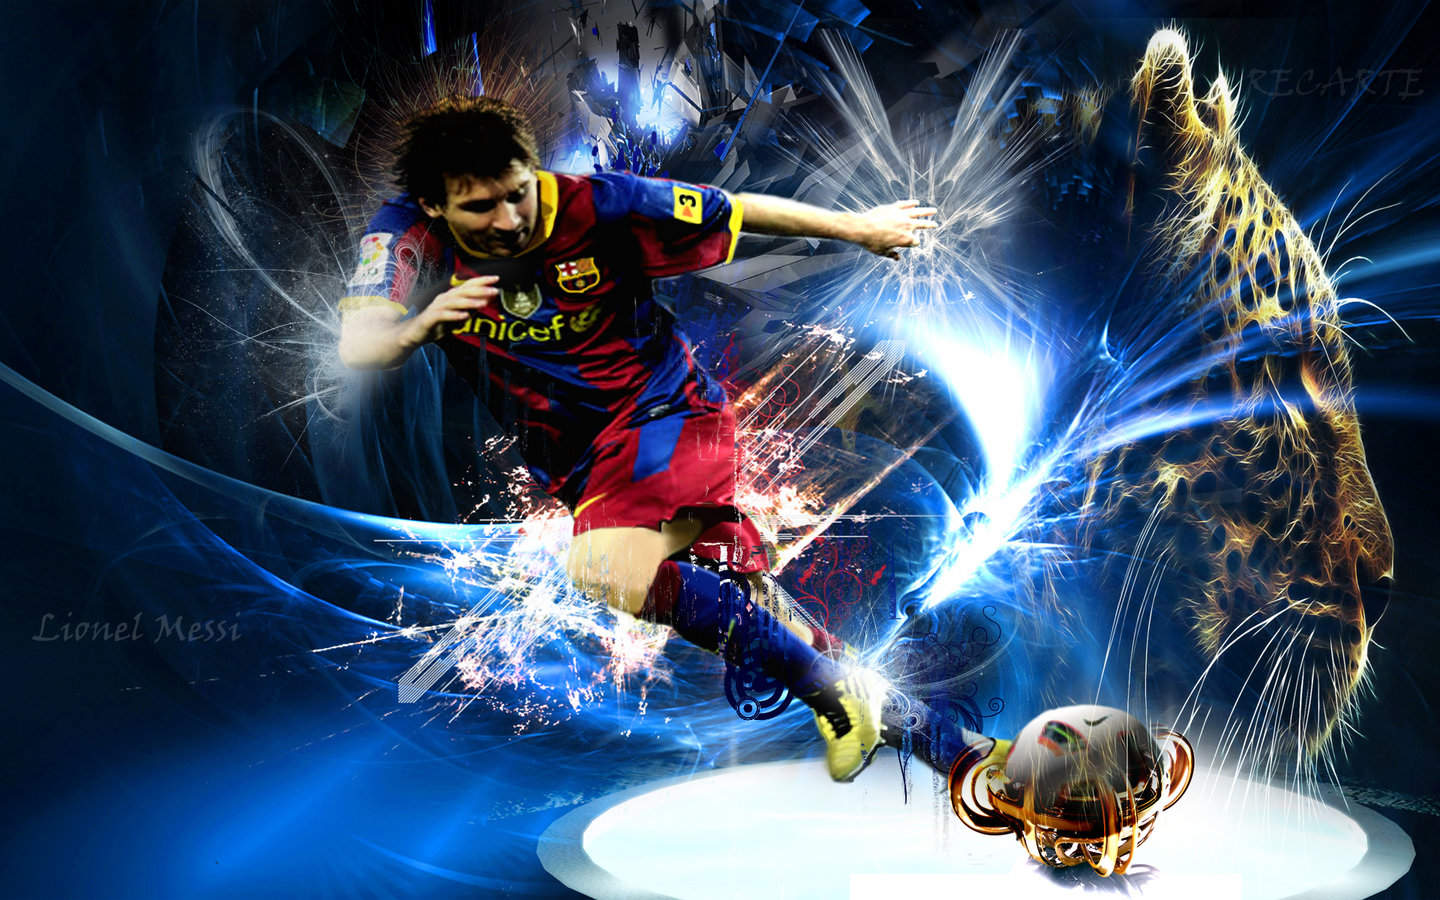 Cùng thưởng thức vẻ đẹp tuyệt vời của Messi trong màu áo Barcelona với những hình nền hoàn toàn miễn phí. Bộ sưu tập hình nền Messi Barcelona với rất nhiều hình ảnh đa dạng và độ phân giải cao đã sẵn sàng chờ đón bạn. Hãy cập nhật cho mình những hình nền mới nhất liên quan đến Messi và Barcelona ngay từ bây giờ.